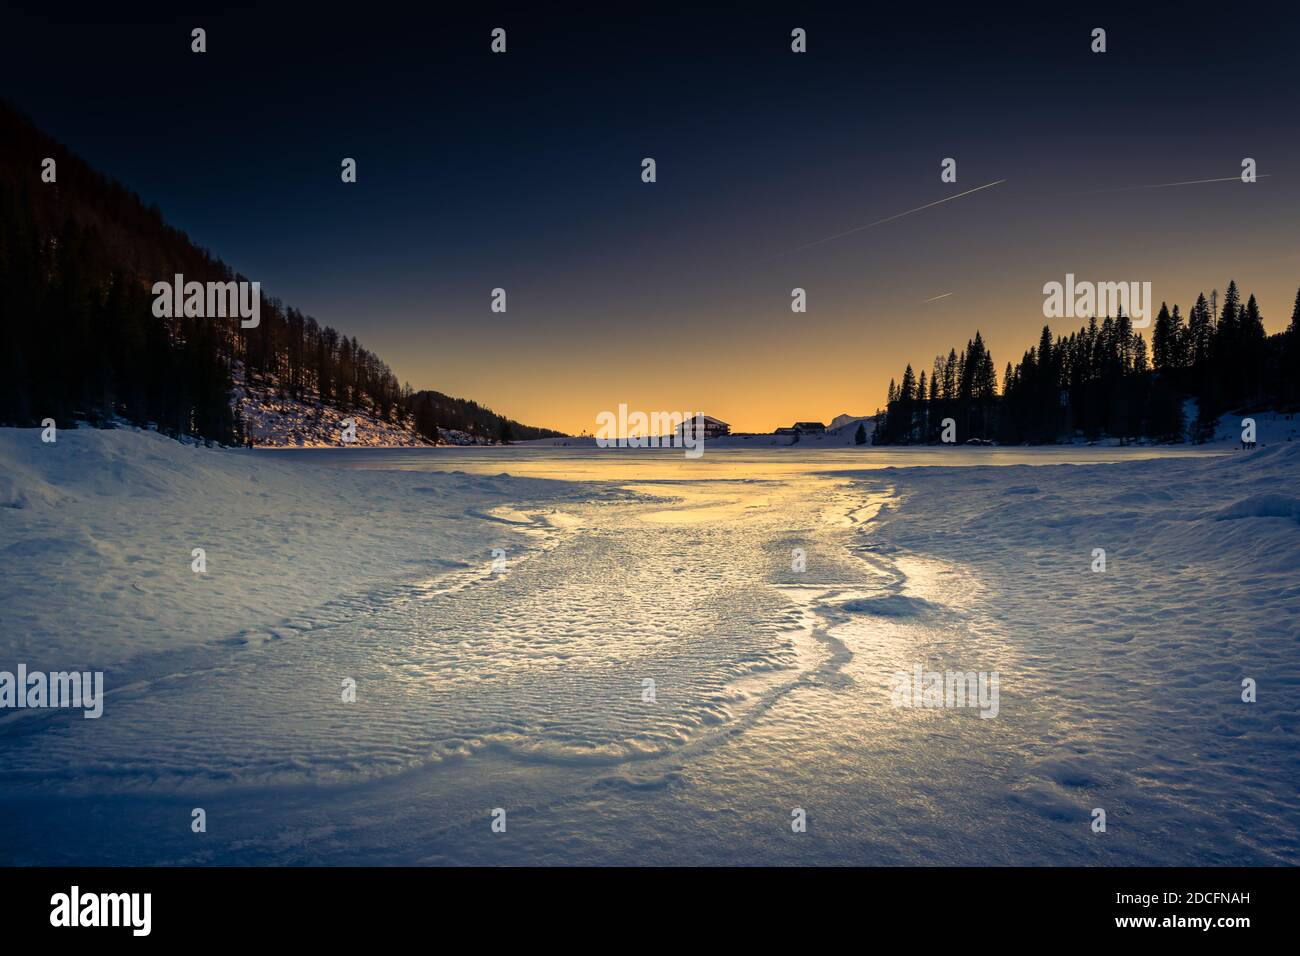 Panorama invernale del Lago Calaita al crepuscolo. Lago ghiacciato, boschi di abeti e prati innevati. Val di Lozen, Trentino-Alto Adige Foto Stock